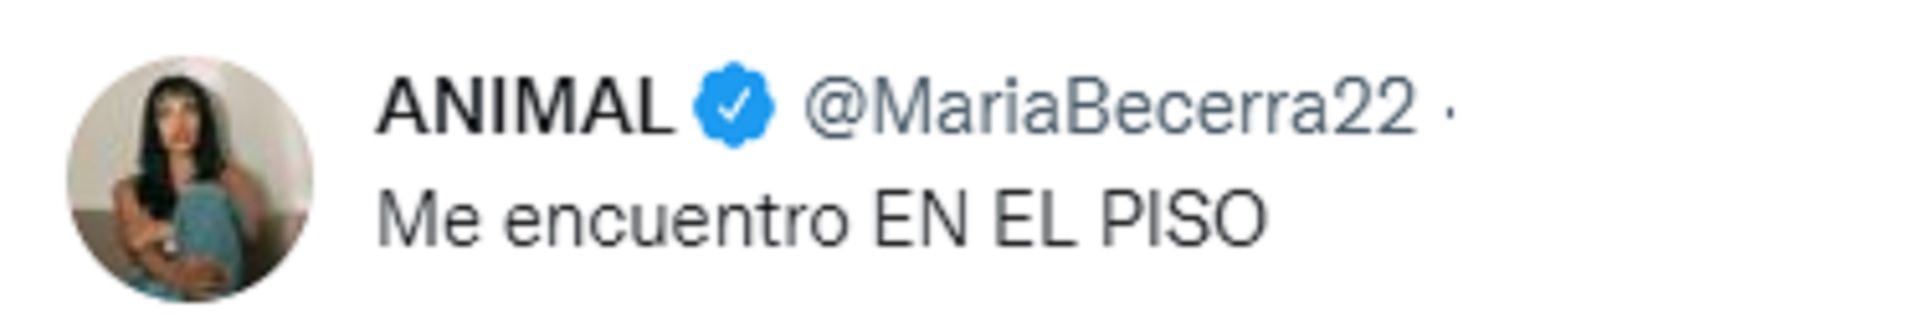 El tuit de María Becerra